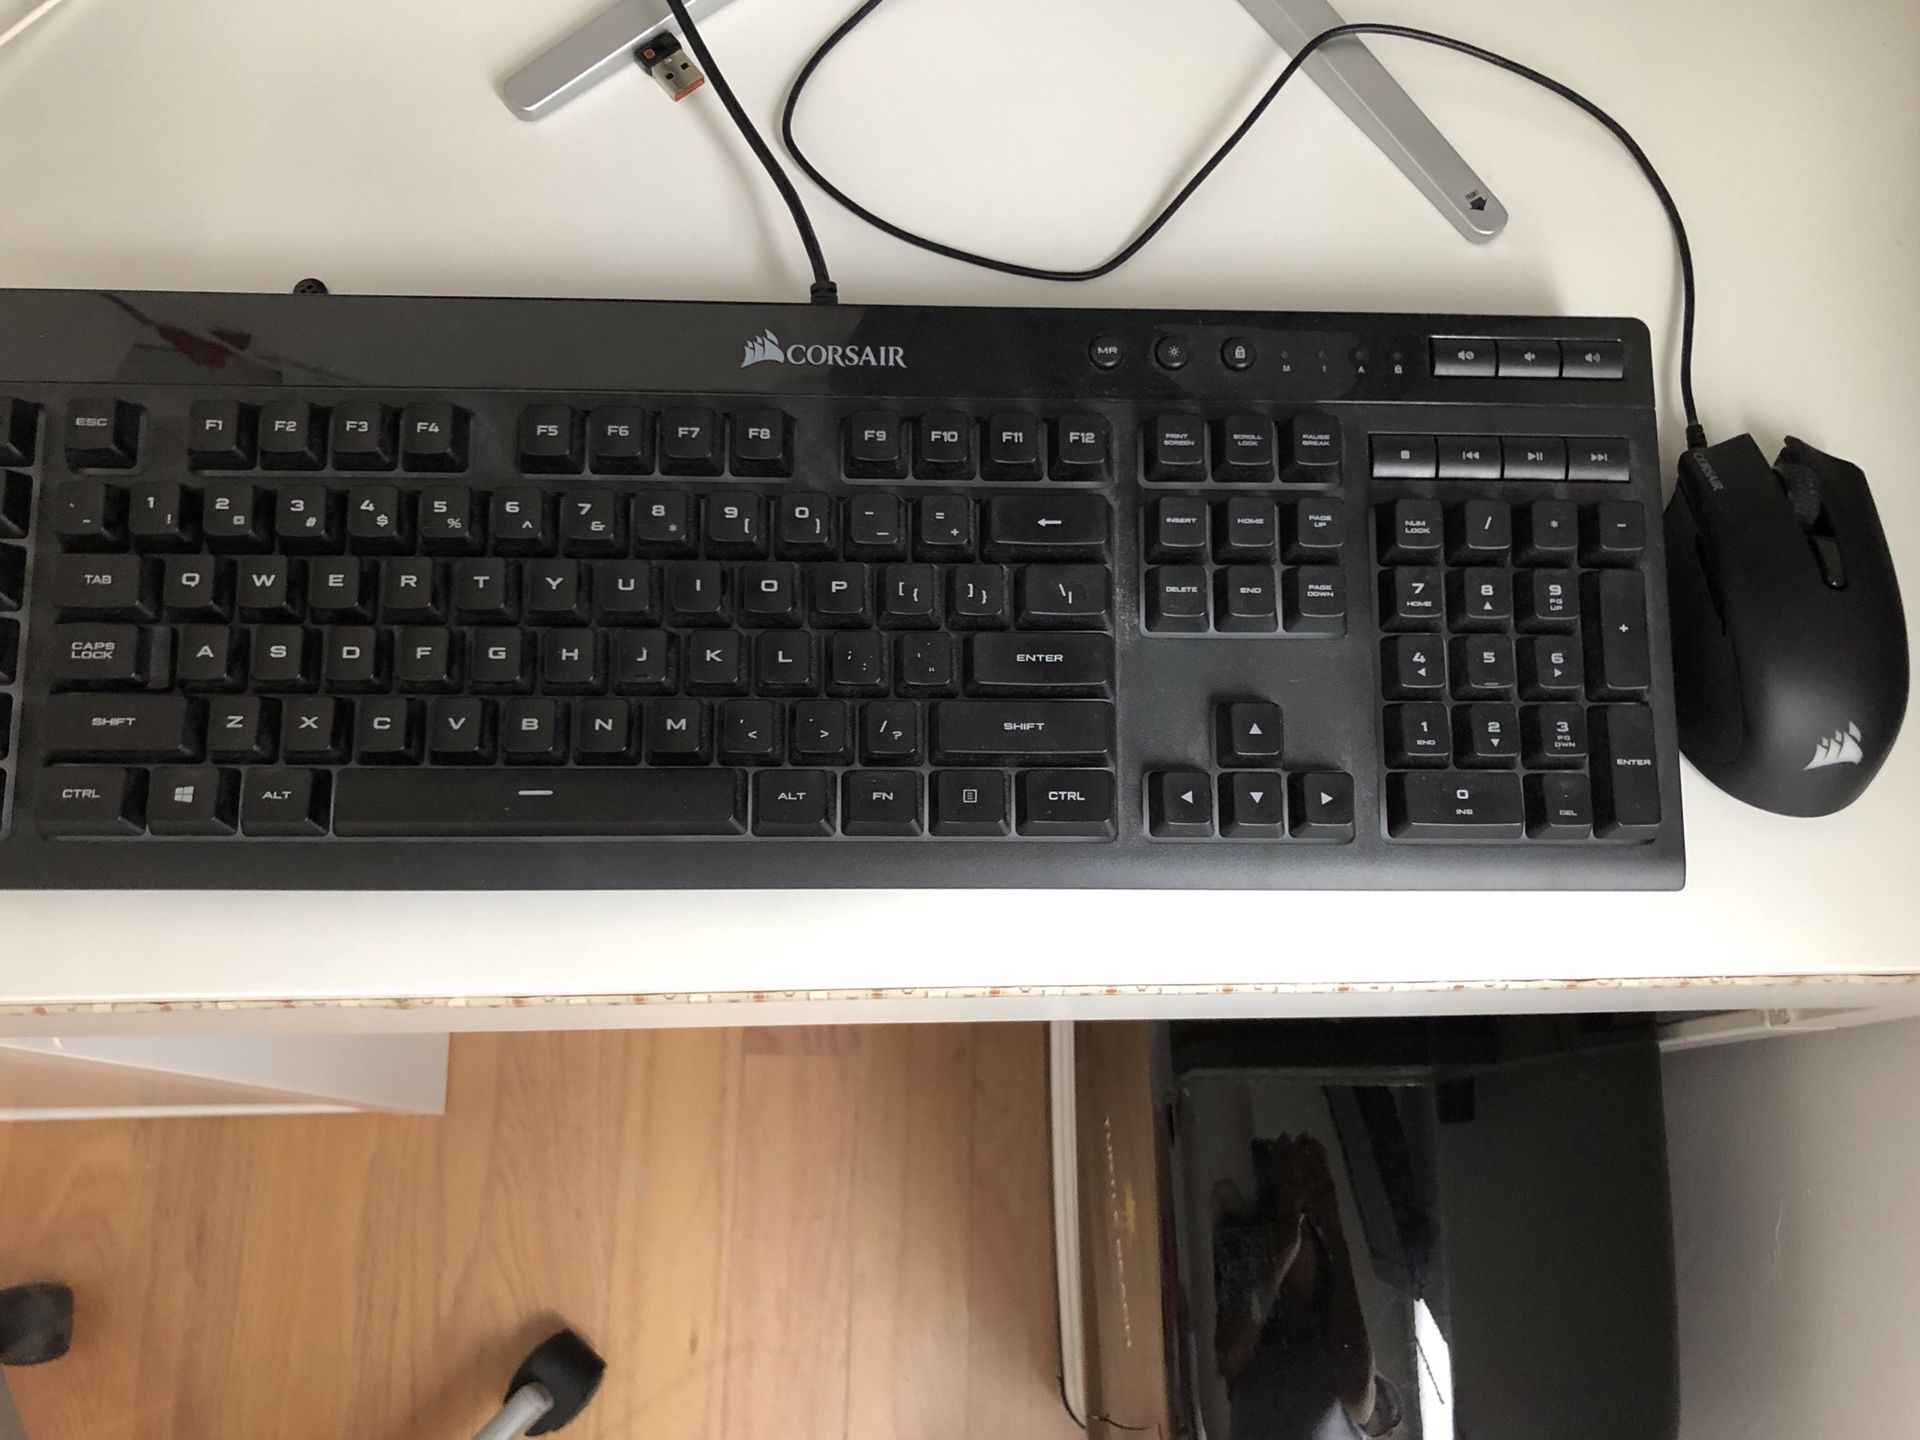 Corsair gaming keyboard and mouse